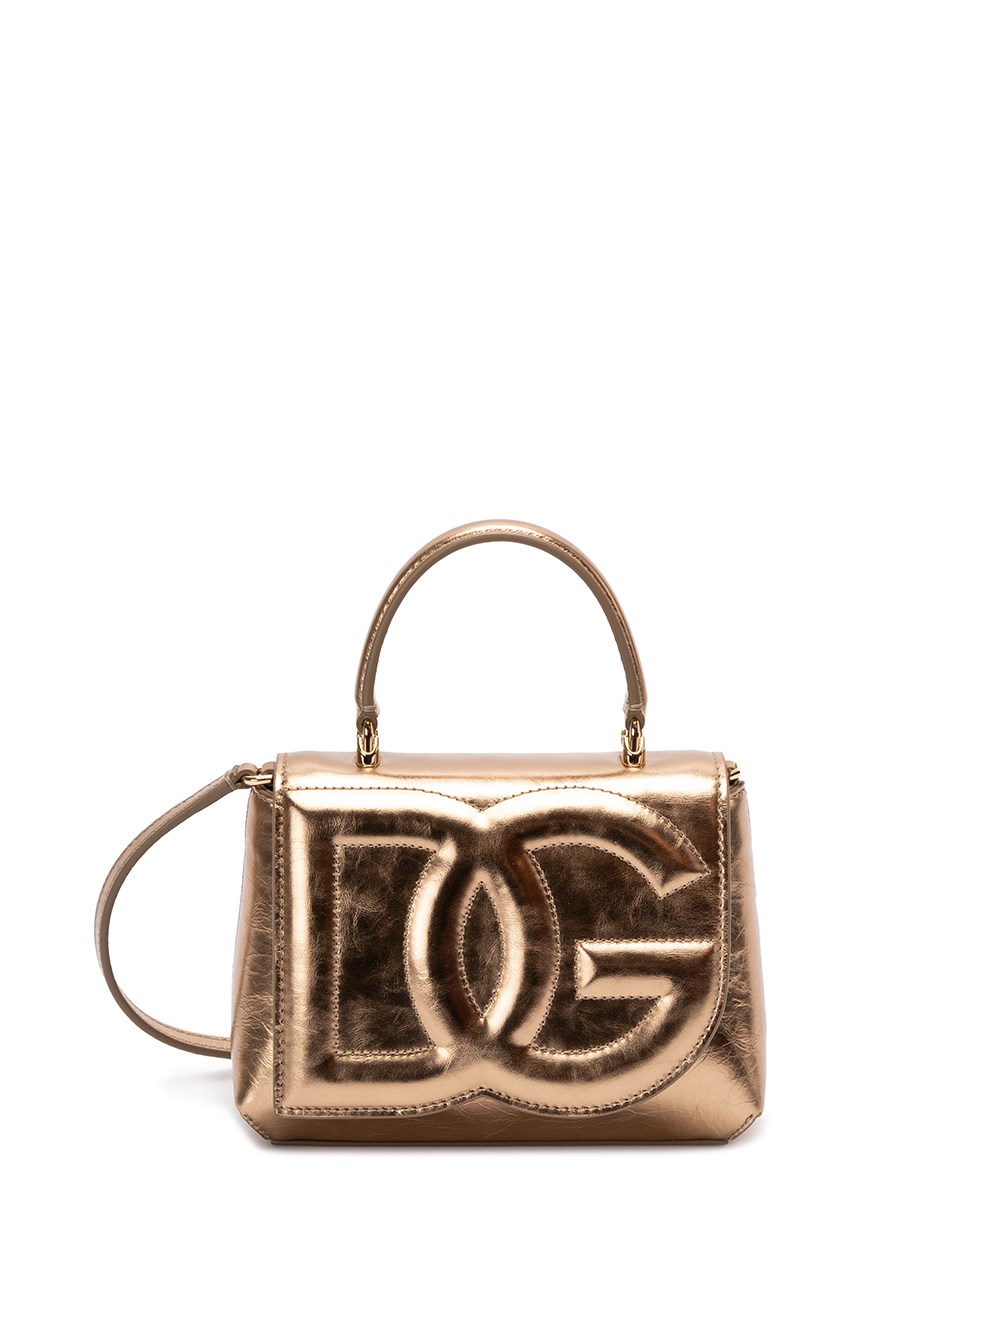 Dolce & Gabbana Leather Dg Logo Handbag In Metallic